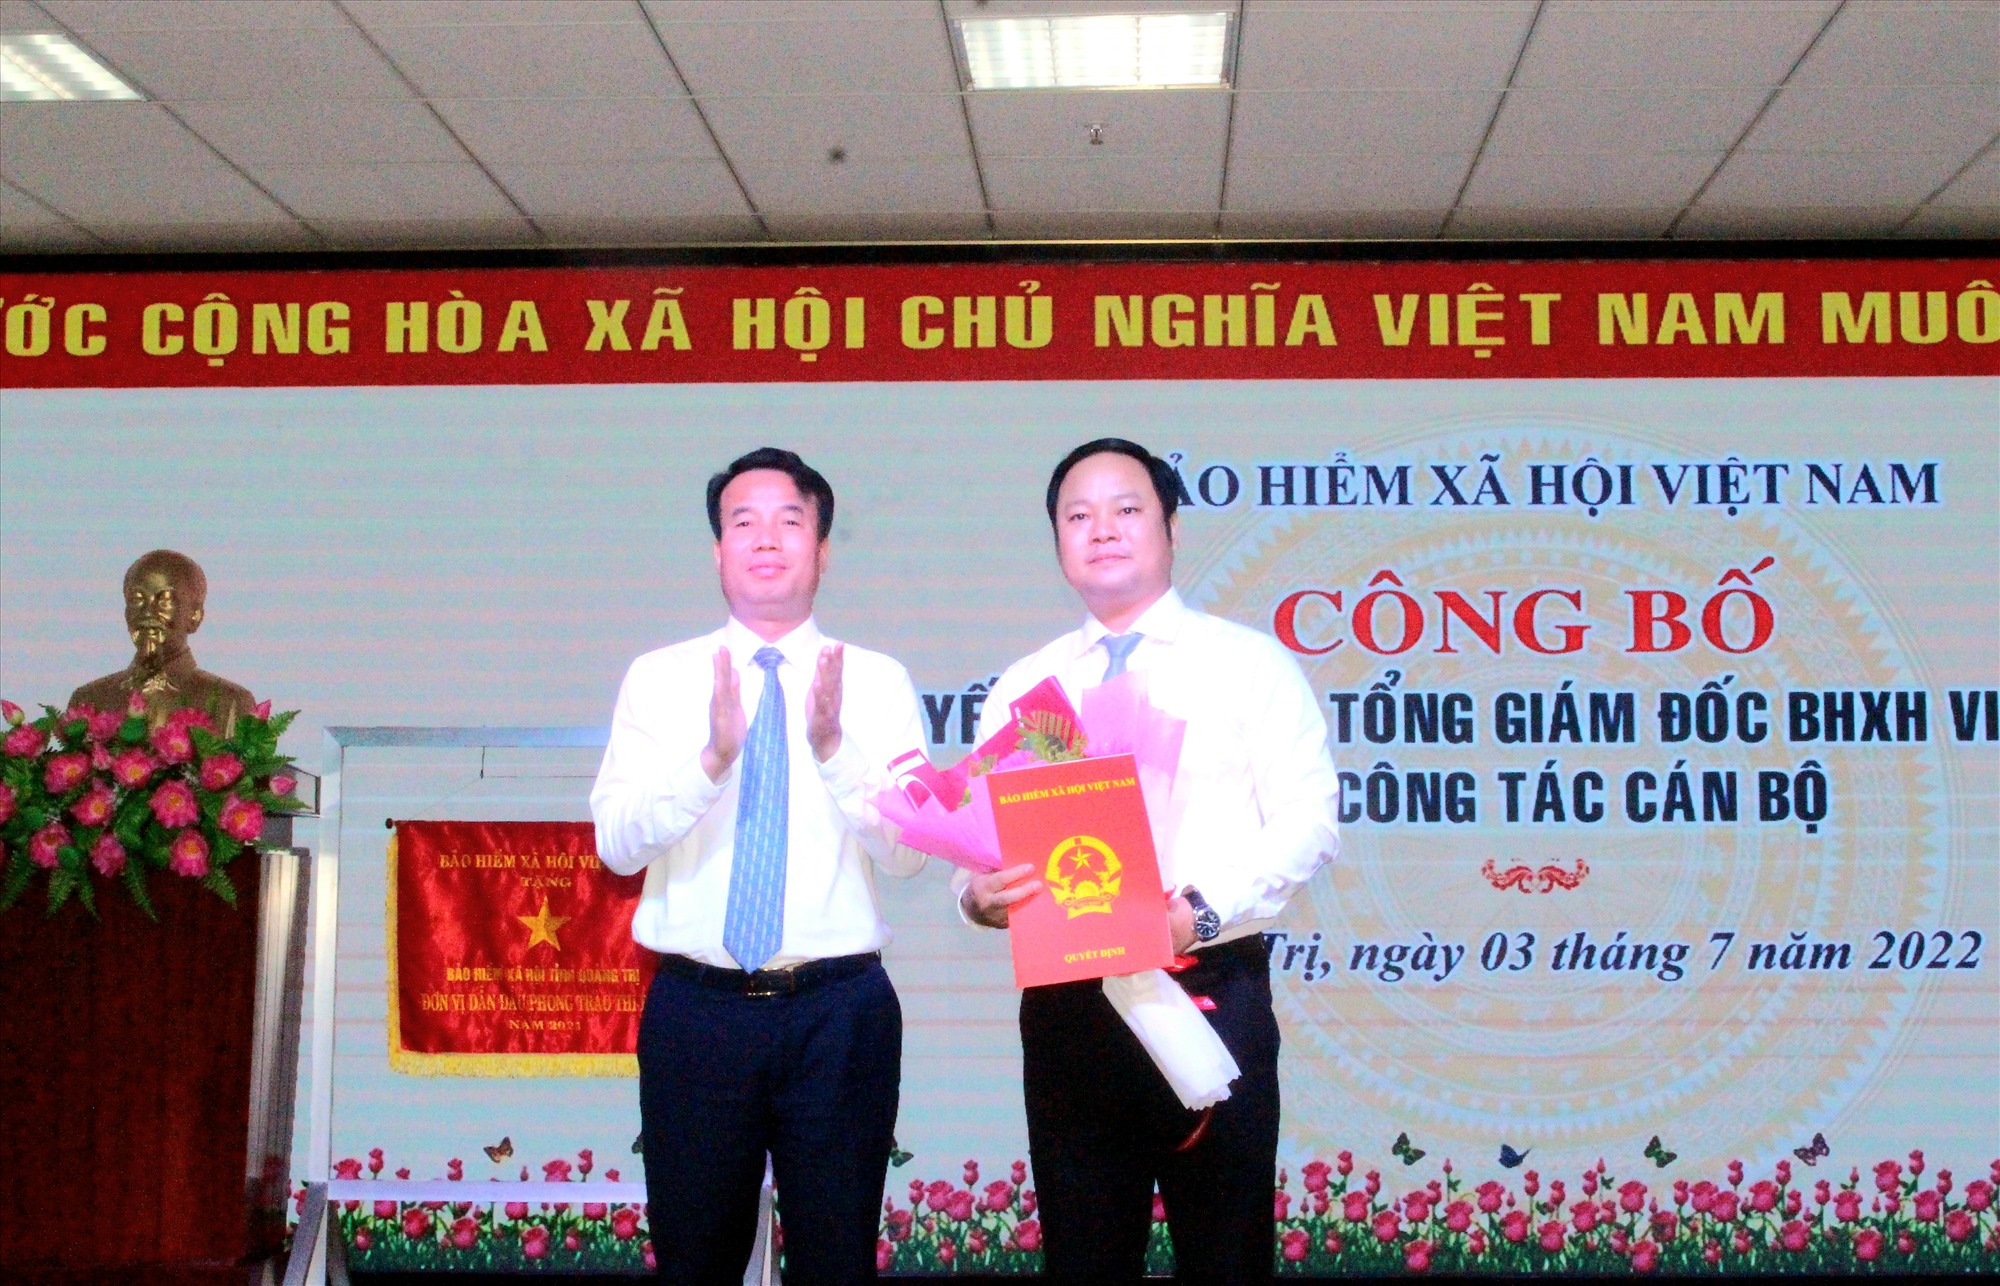 Tổng Giám đốc BHXH Việt Nam Nguyễn Thế Mạnh trao quyết định bổ nhiệm Phó Giám đốc BHXH tỉnh cho ông Đào Công Tuấn  - Ảnh: T.T